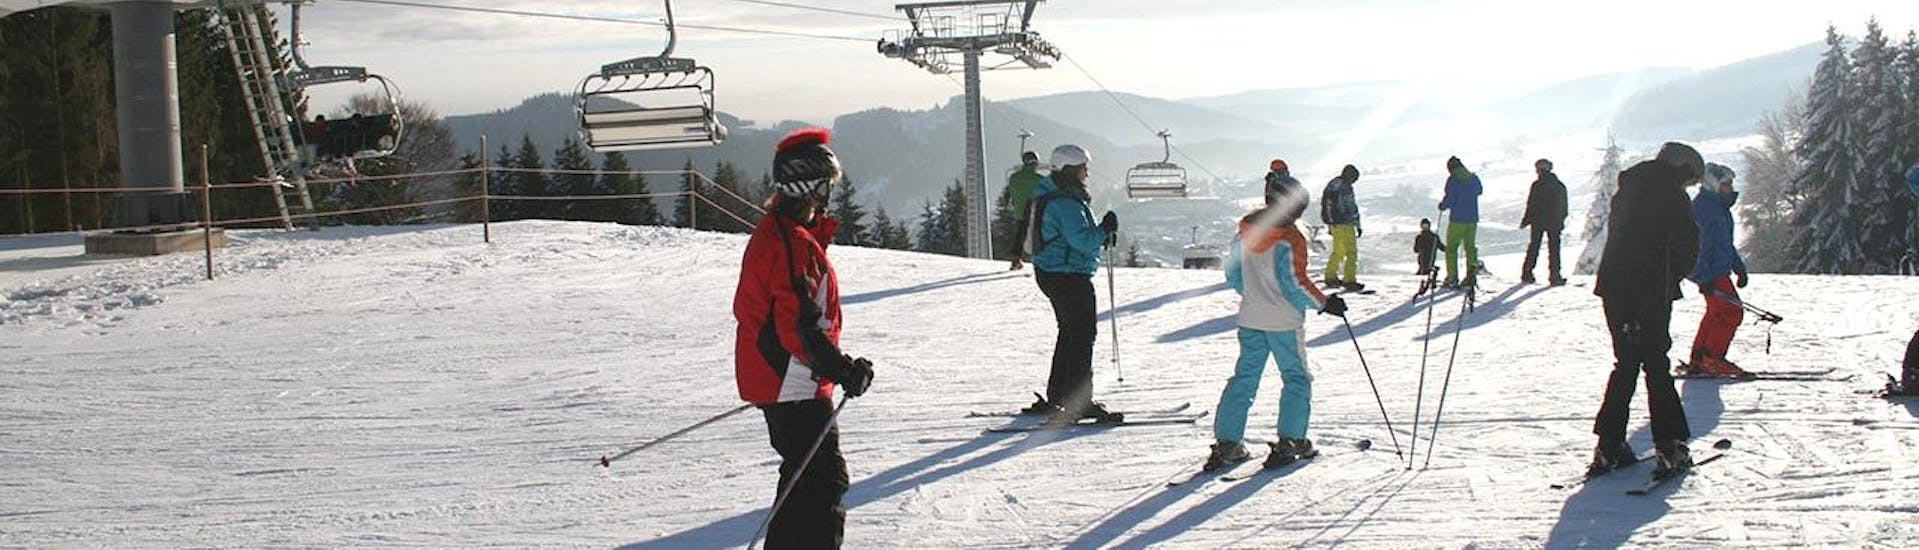 Tijdens de Skilessen voor Tieners (13-17 j.) - Alle niveaus - Halve Dag, geniet een groep tieners van het skiën onder leiding van een ervaren skileraar van de Skischule Snow & Bike Factory Willingen.